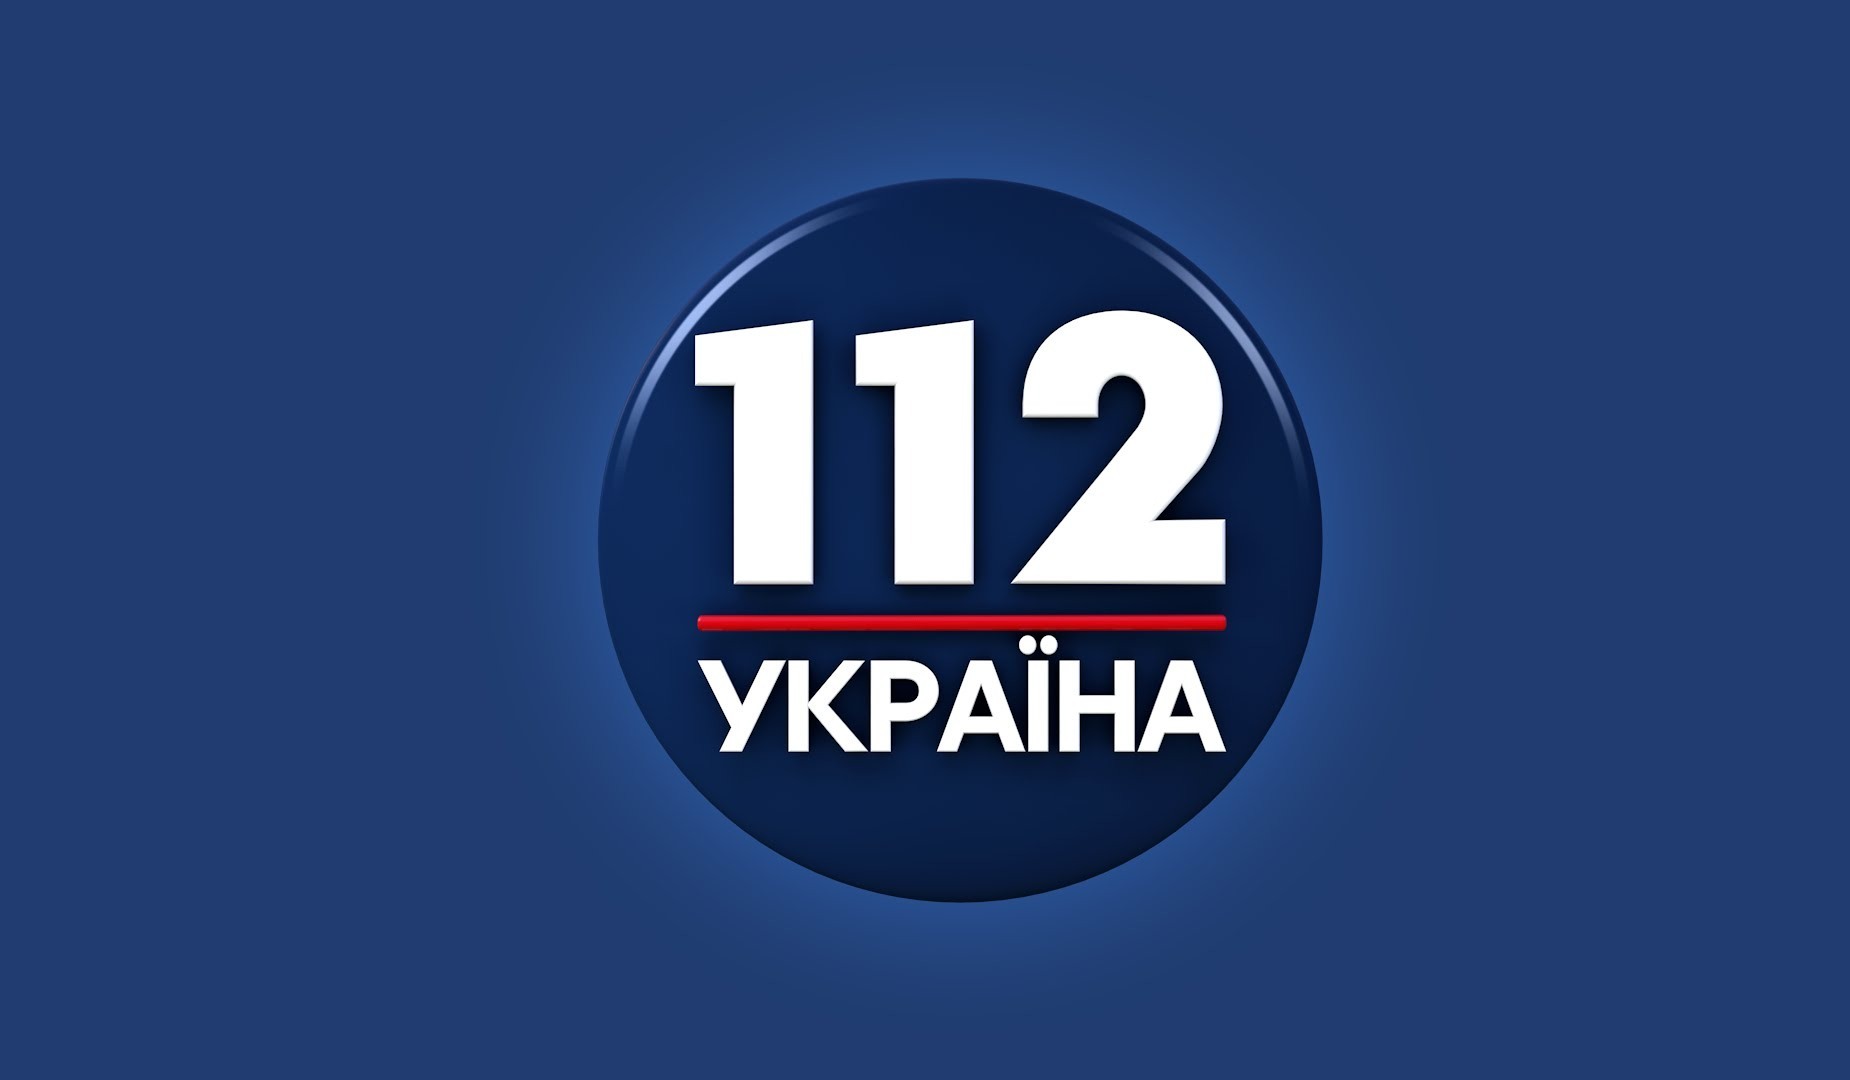 Телеканал «112 Україна» оскаржив рішення Нацради про додаткову умову переоформлення ліцензій